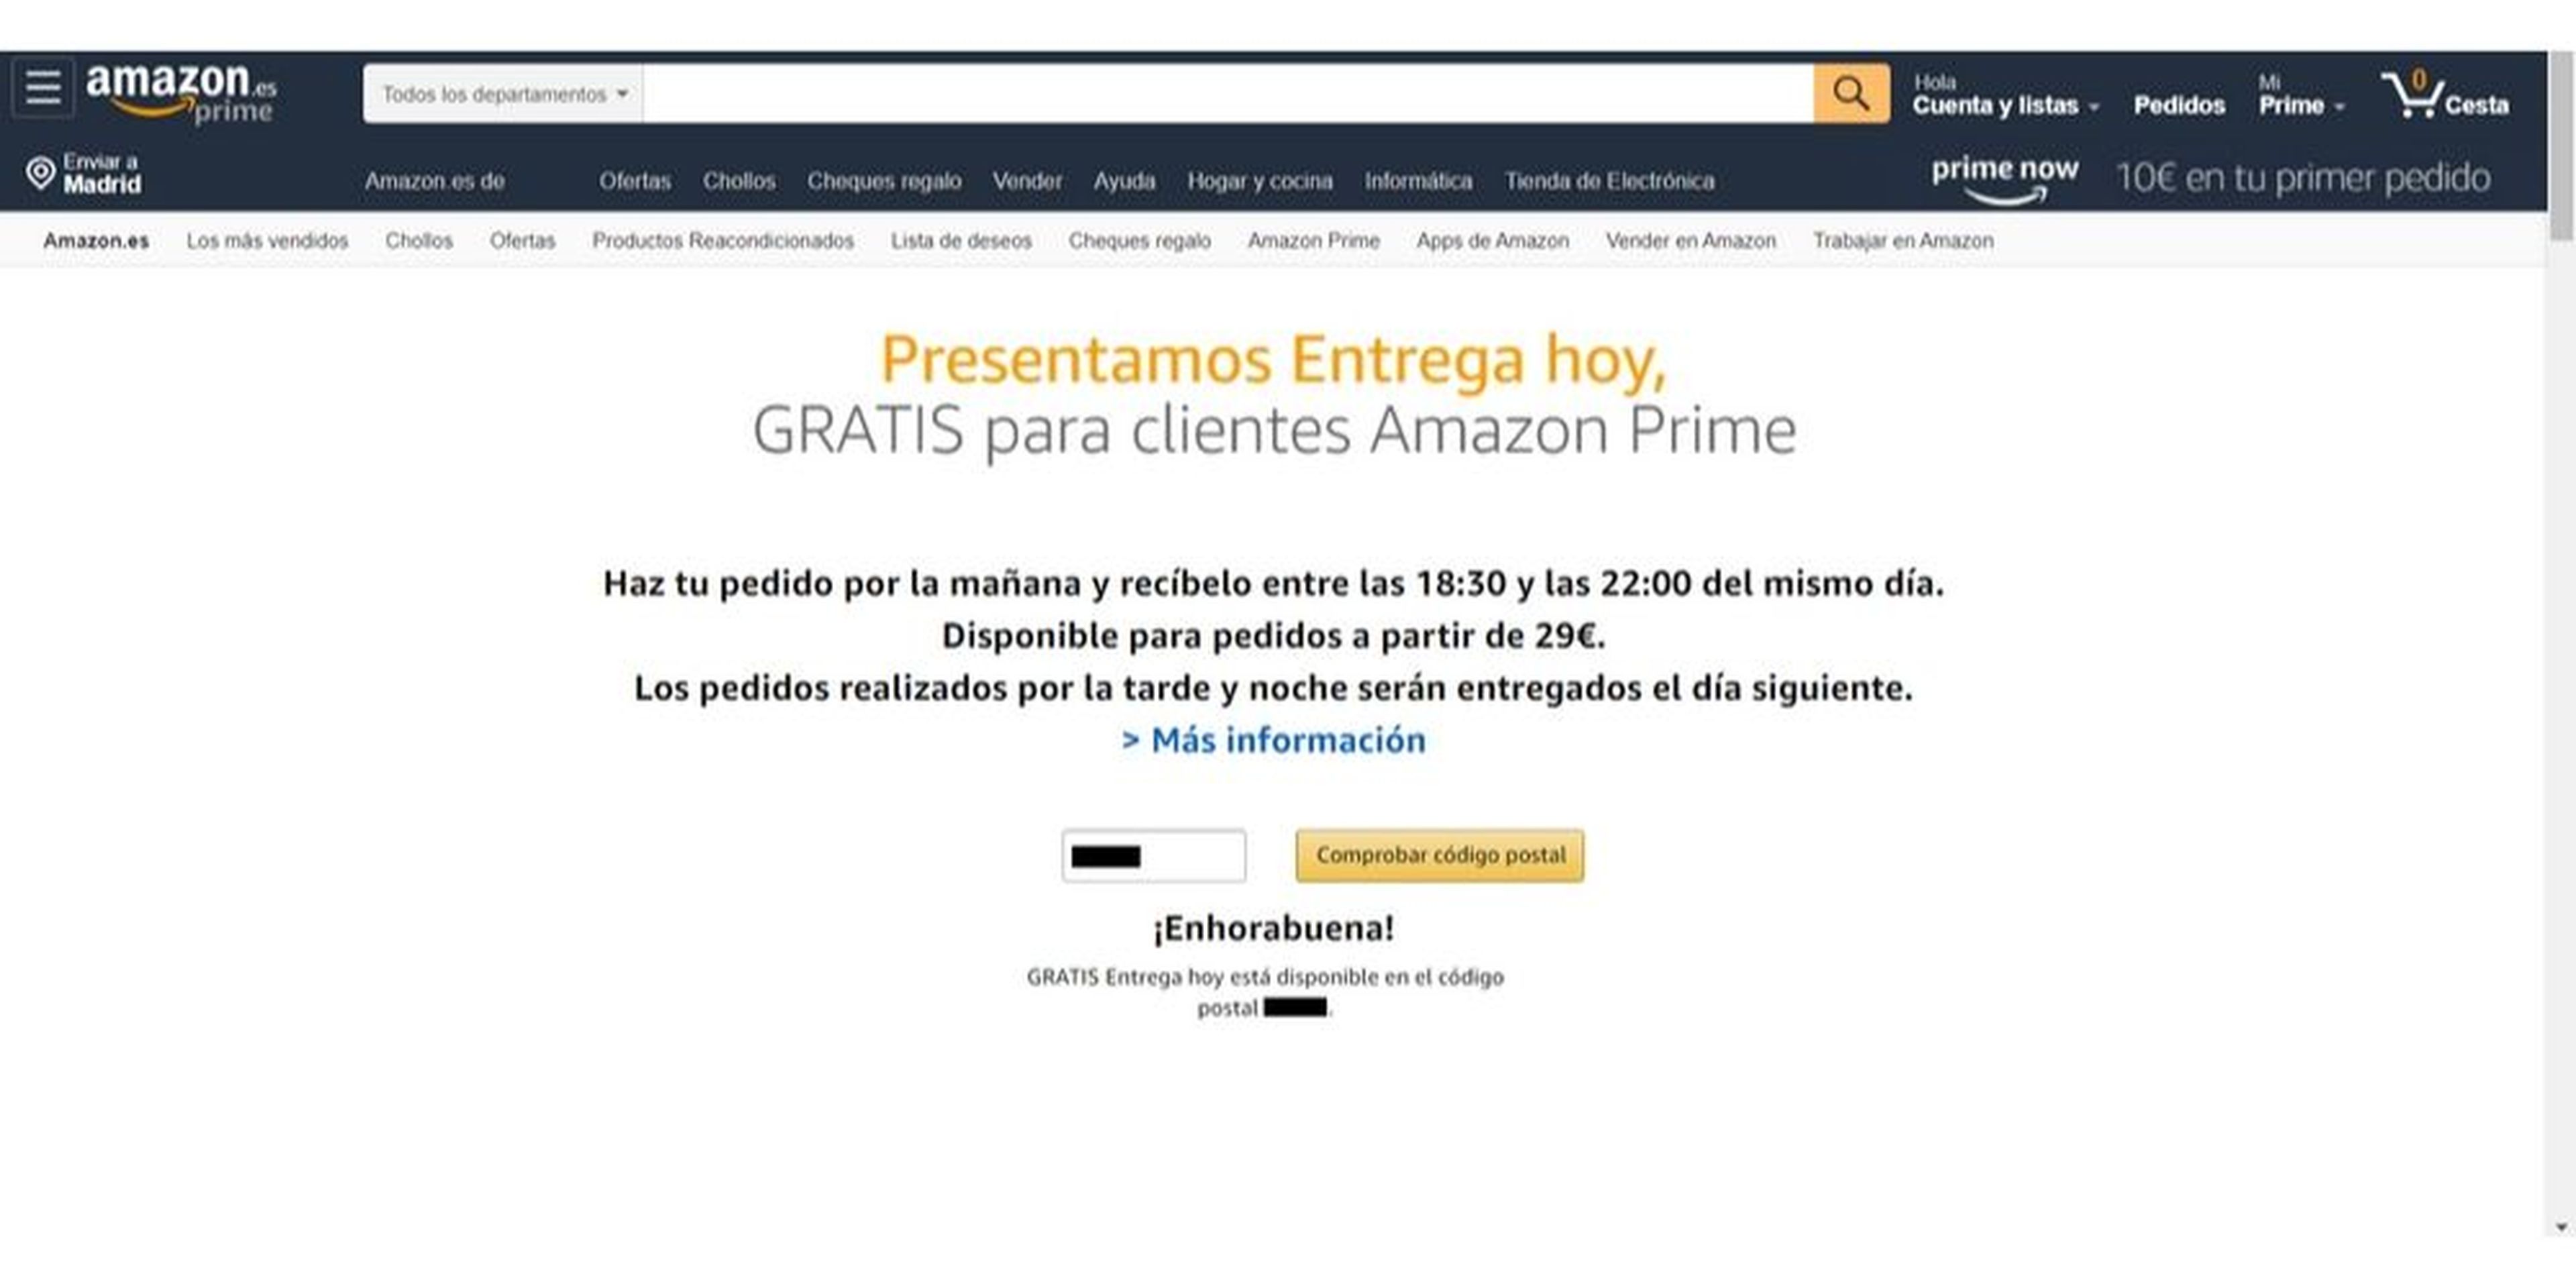 Amazon Entrega Hoy, envío gratuito en el mismo día